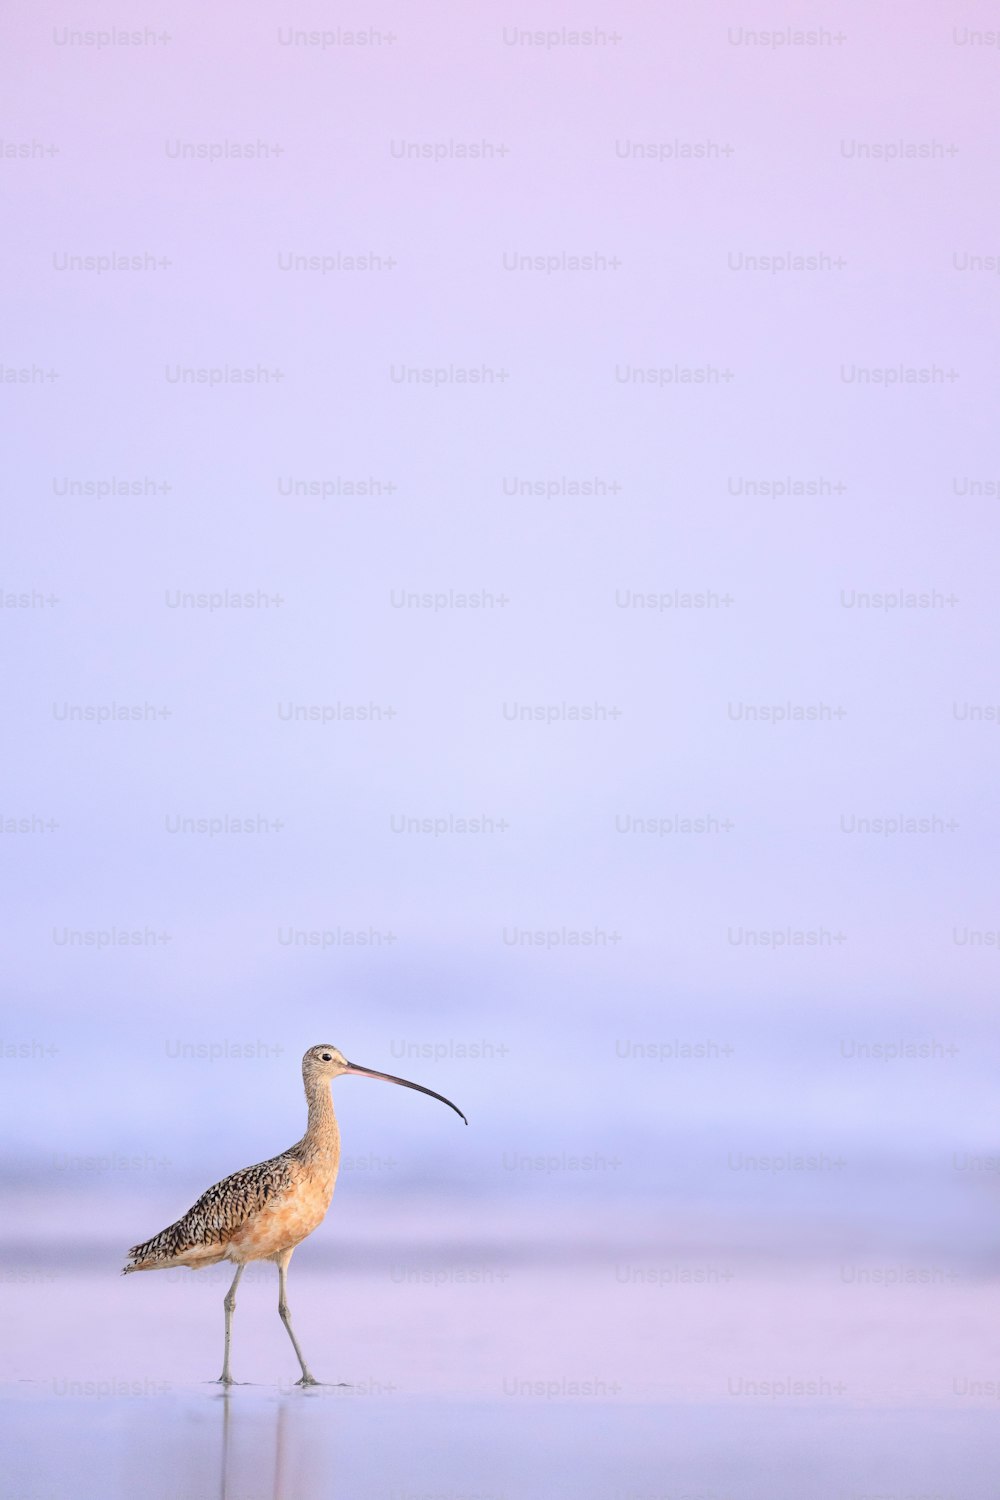 um pássaro com um bico longo andando em uma praia